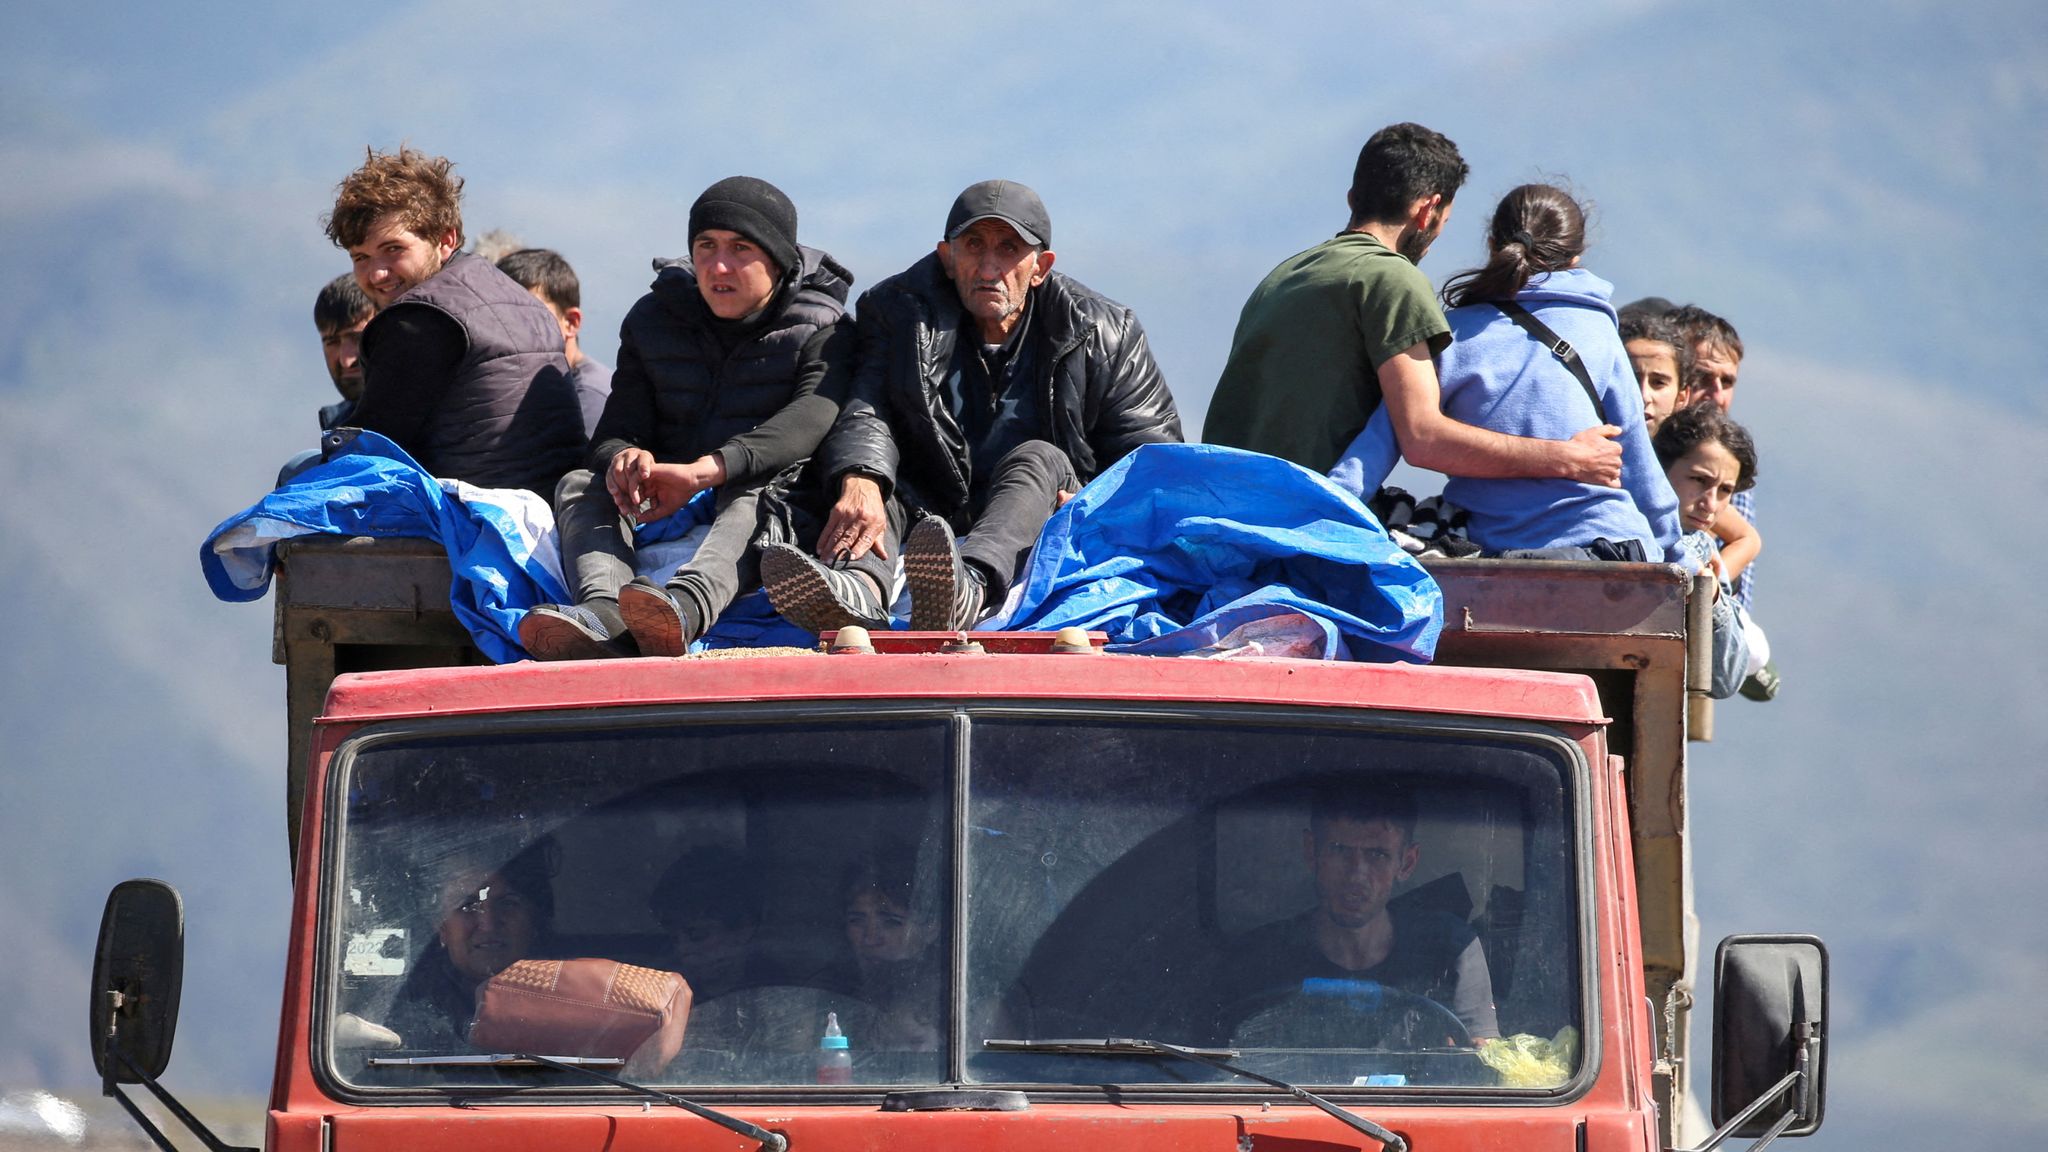 https://e3.365dm.com/23/09/2048x1152/skynews-refugees-nagorno-karabakh_6303264.jpg?20230930134744